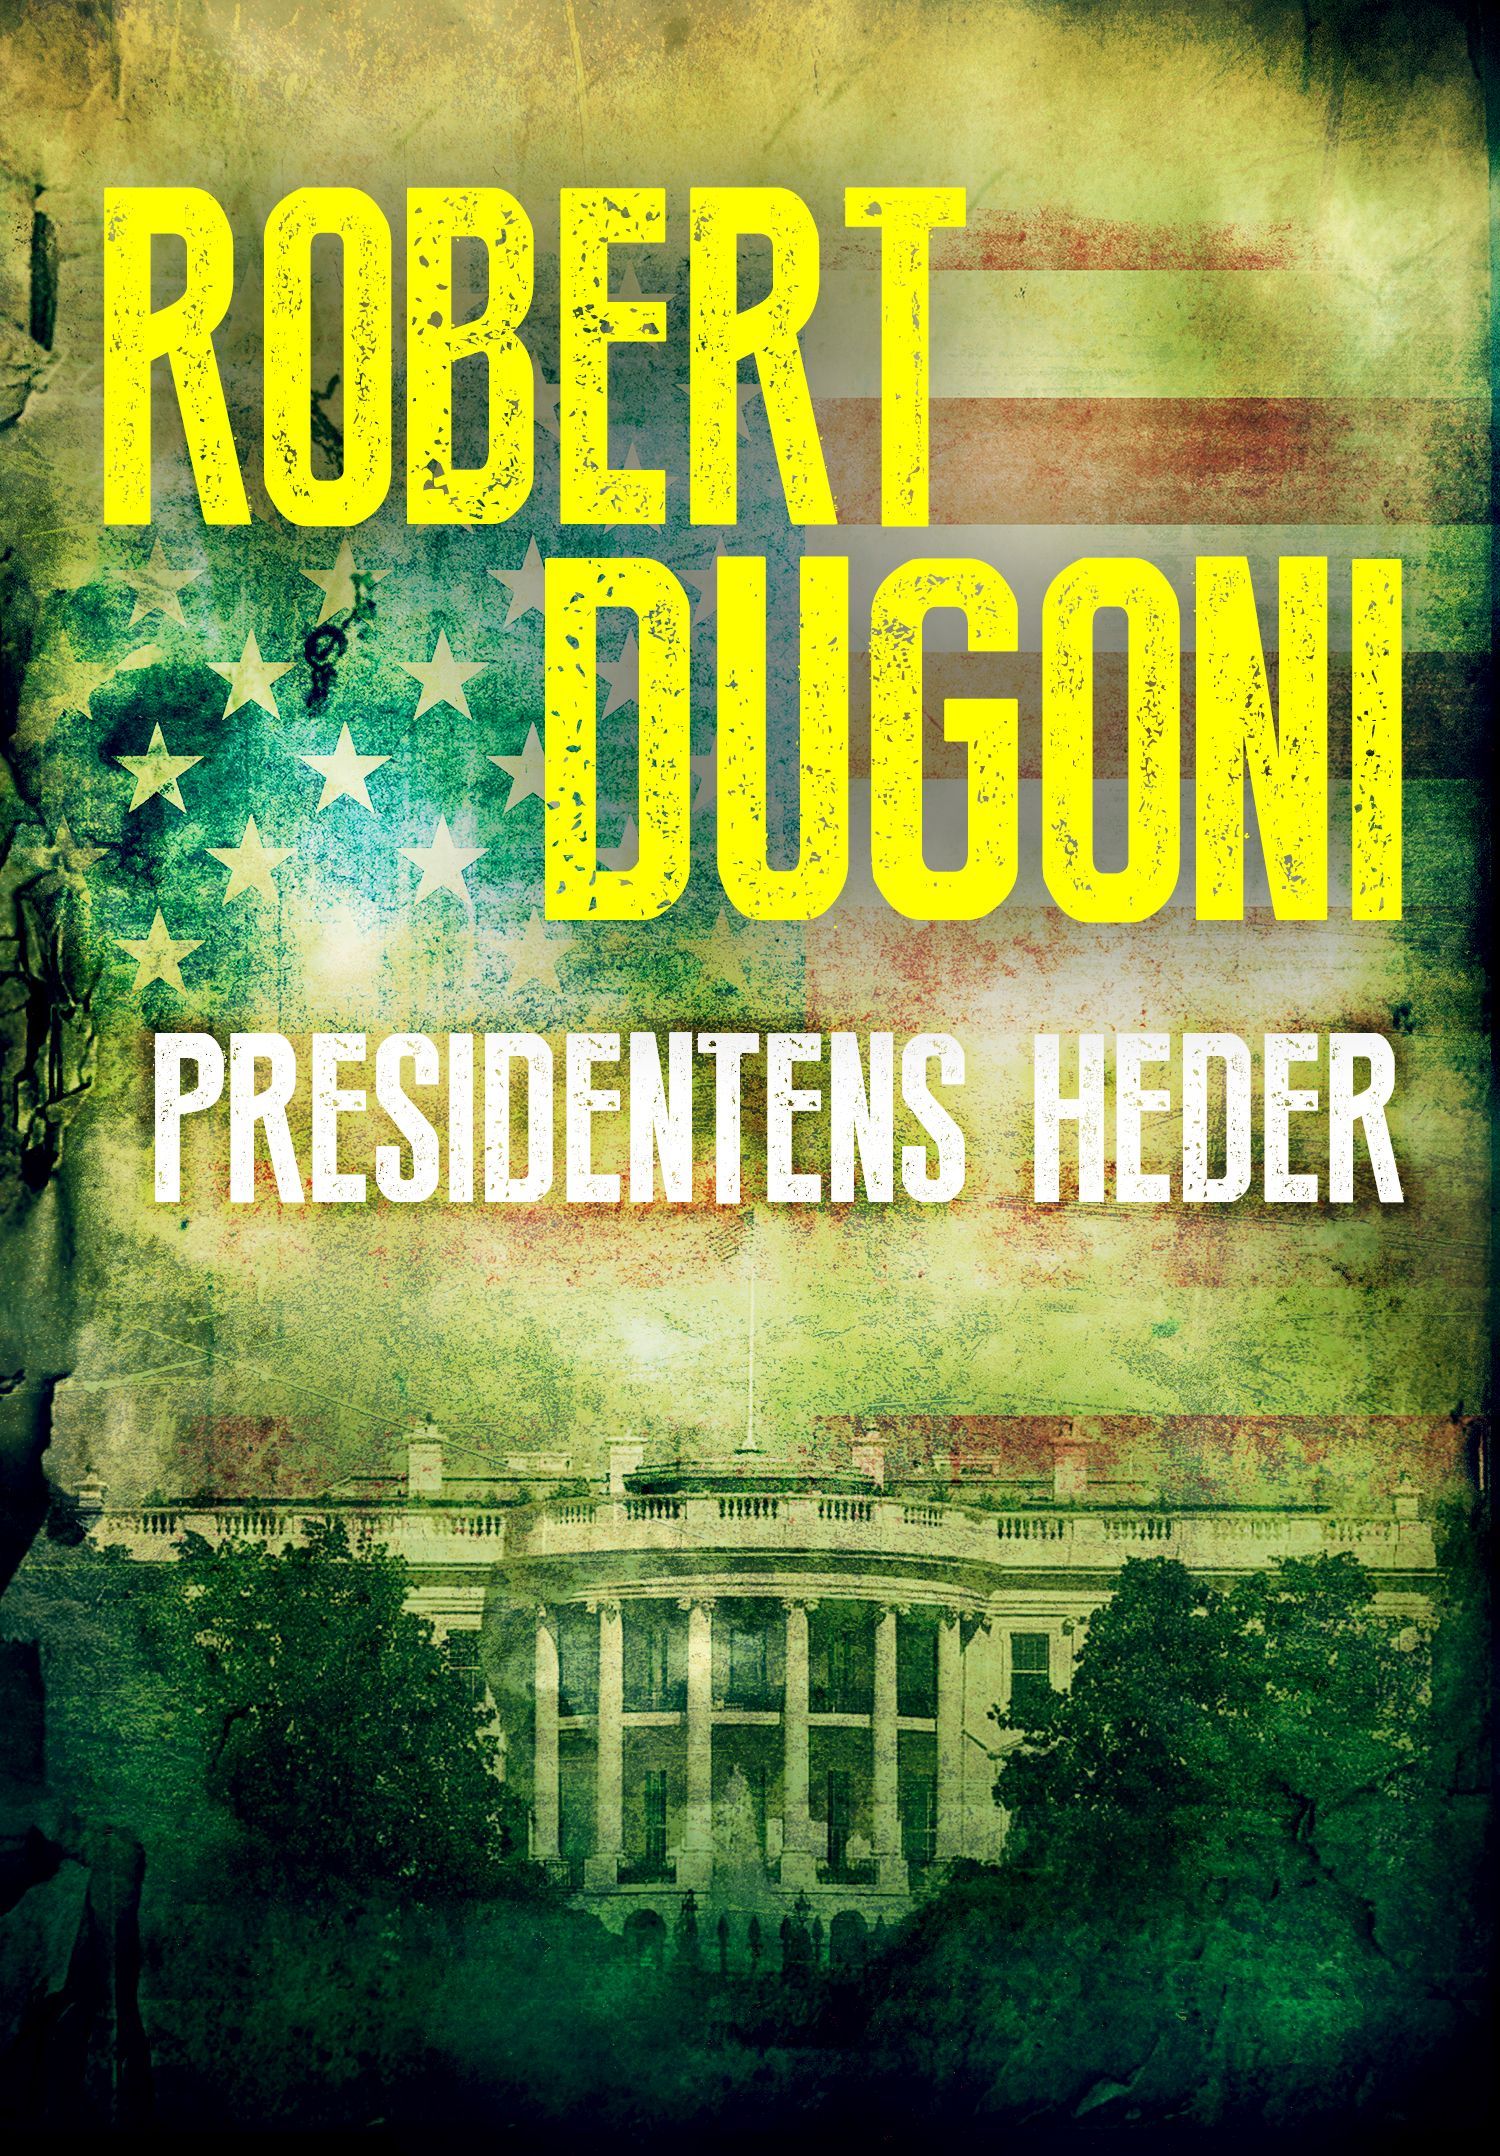 Presidentens heder, e-bog af Robert Dugoni